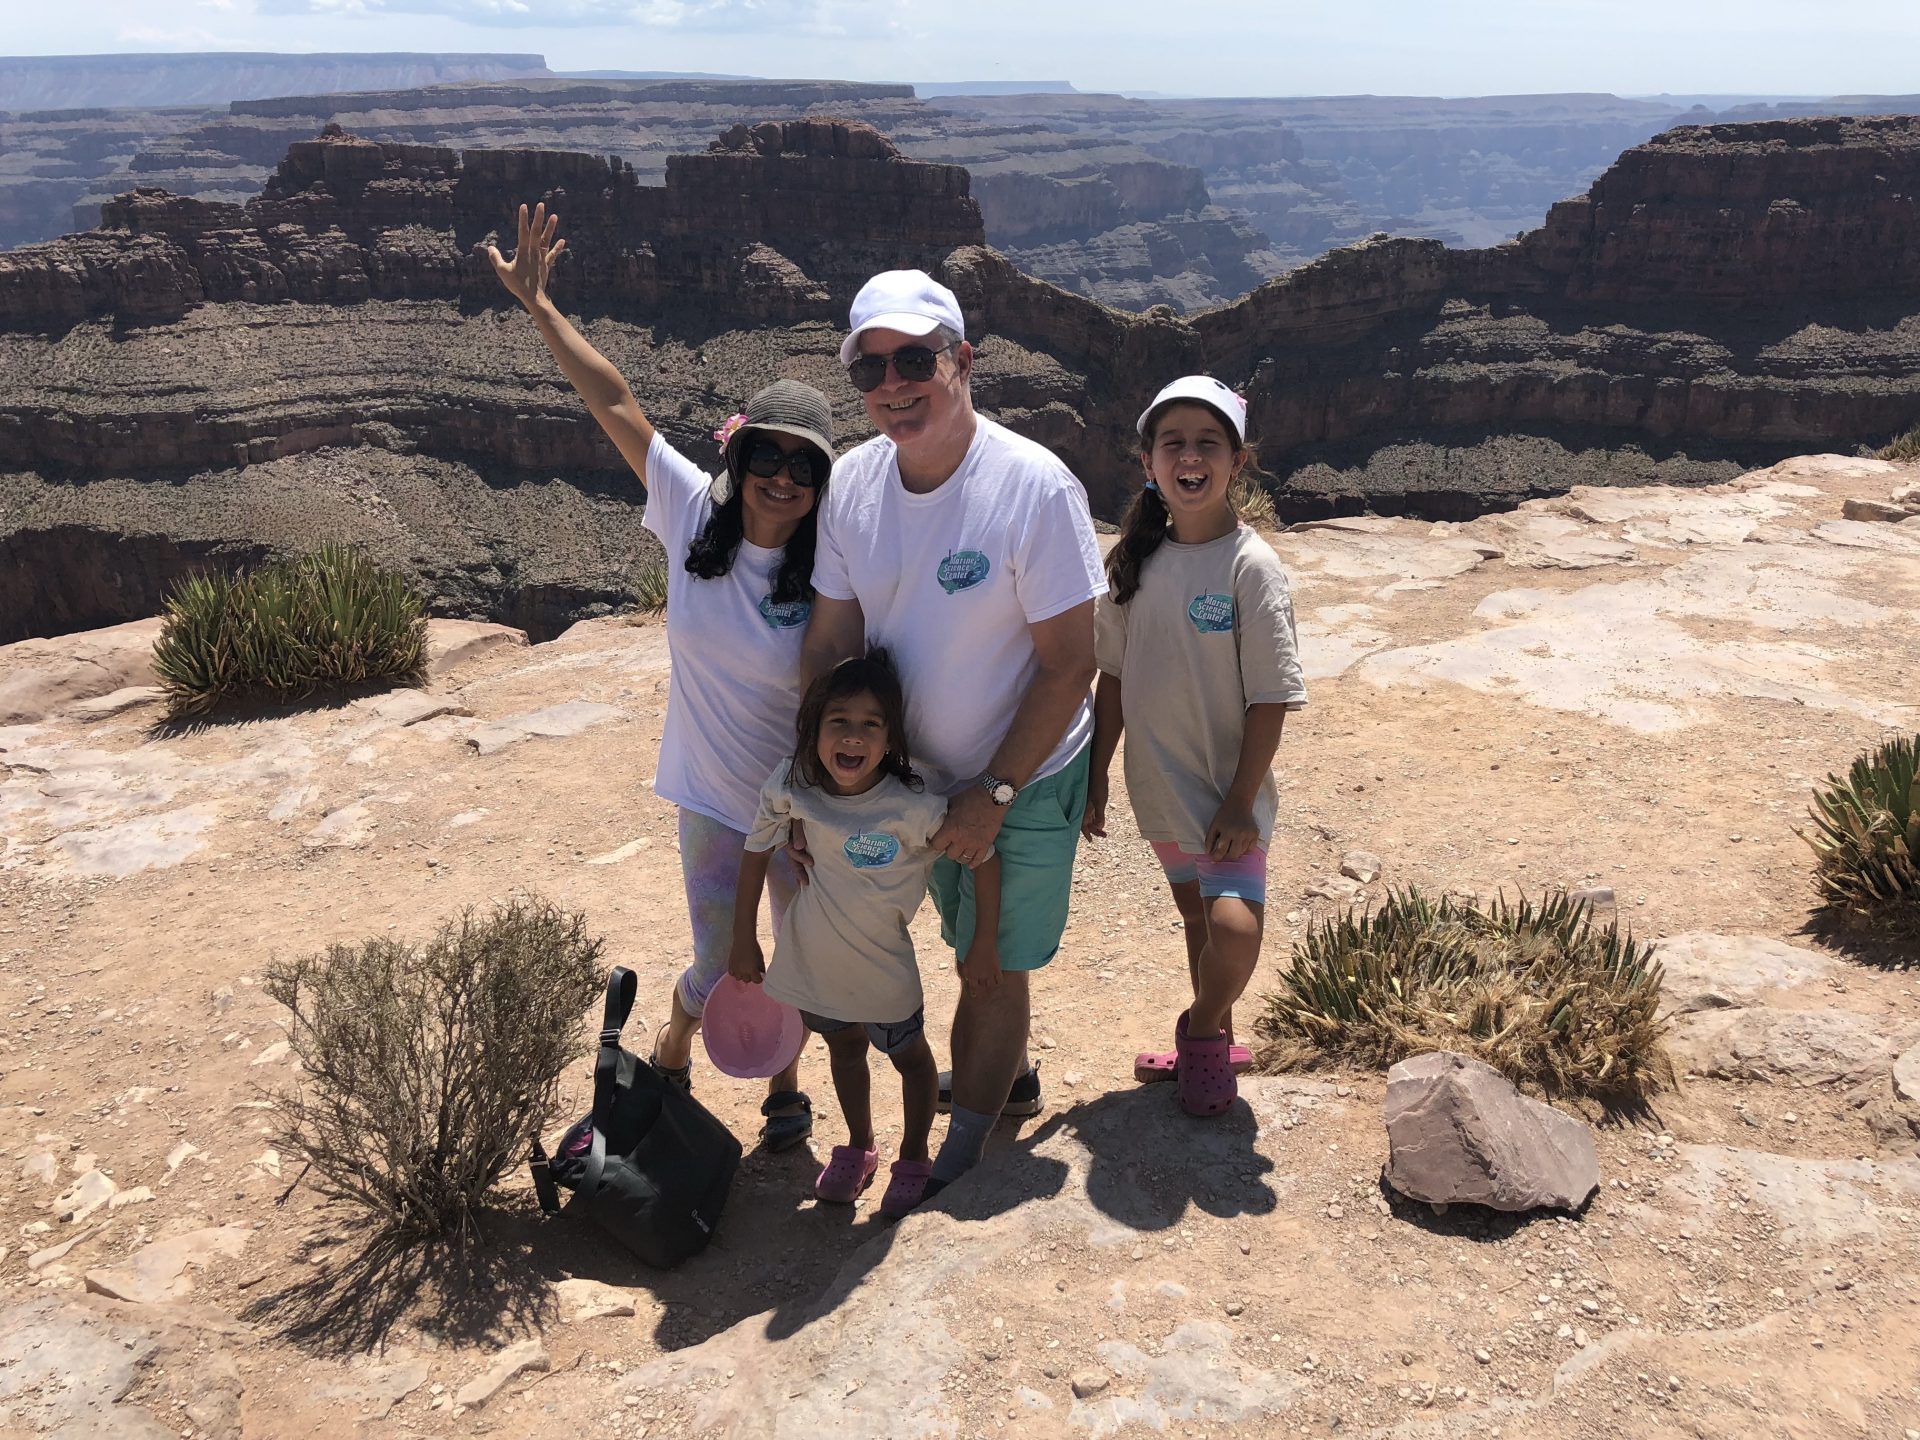 Tom & Family at the Grand Canyon, AZ